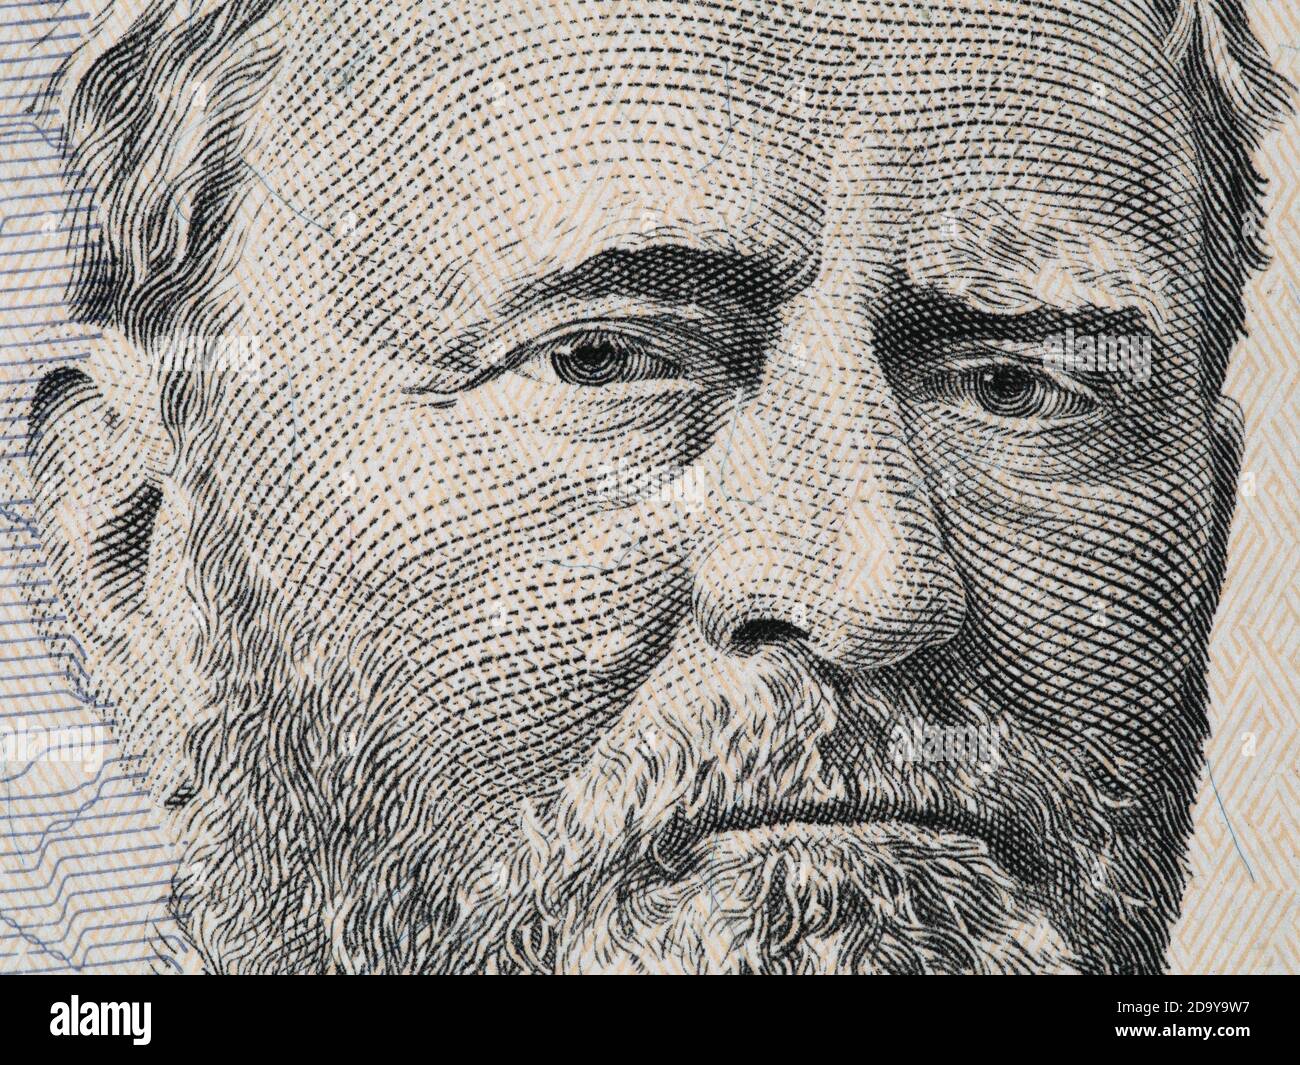 Ulysses Grant US Präsident Gesicht auf fünfzig Dollar Rechnung Makro, vereinigte Staaten Geld Nahaufnahme Stockfoto